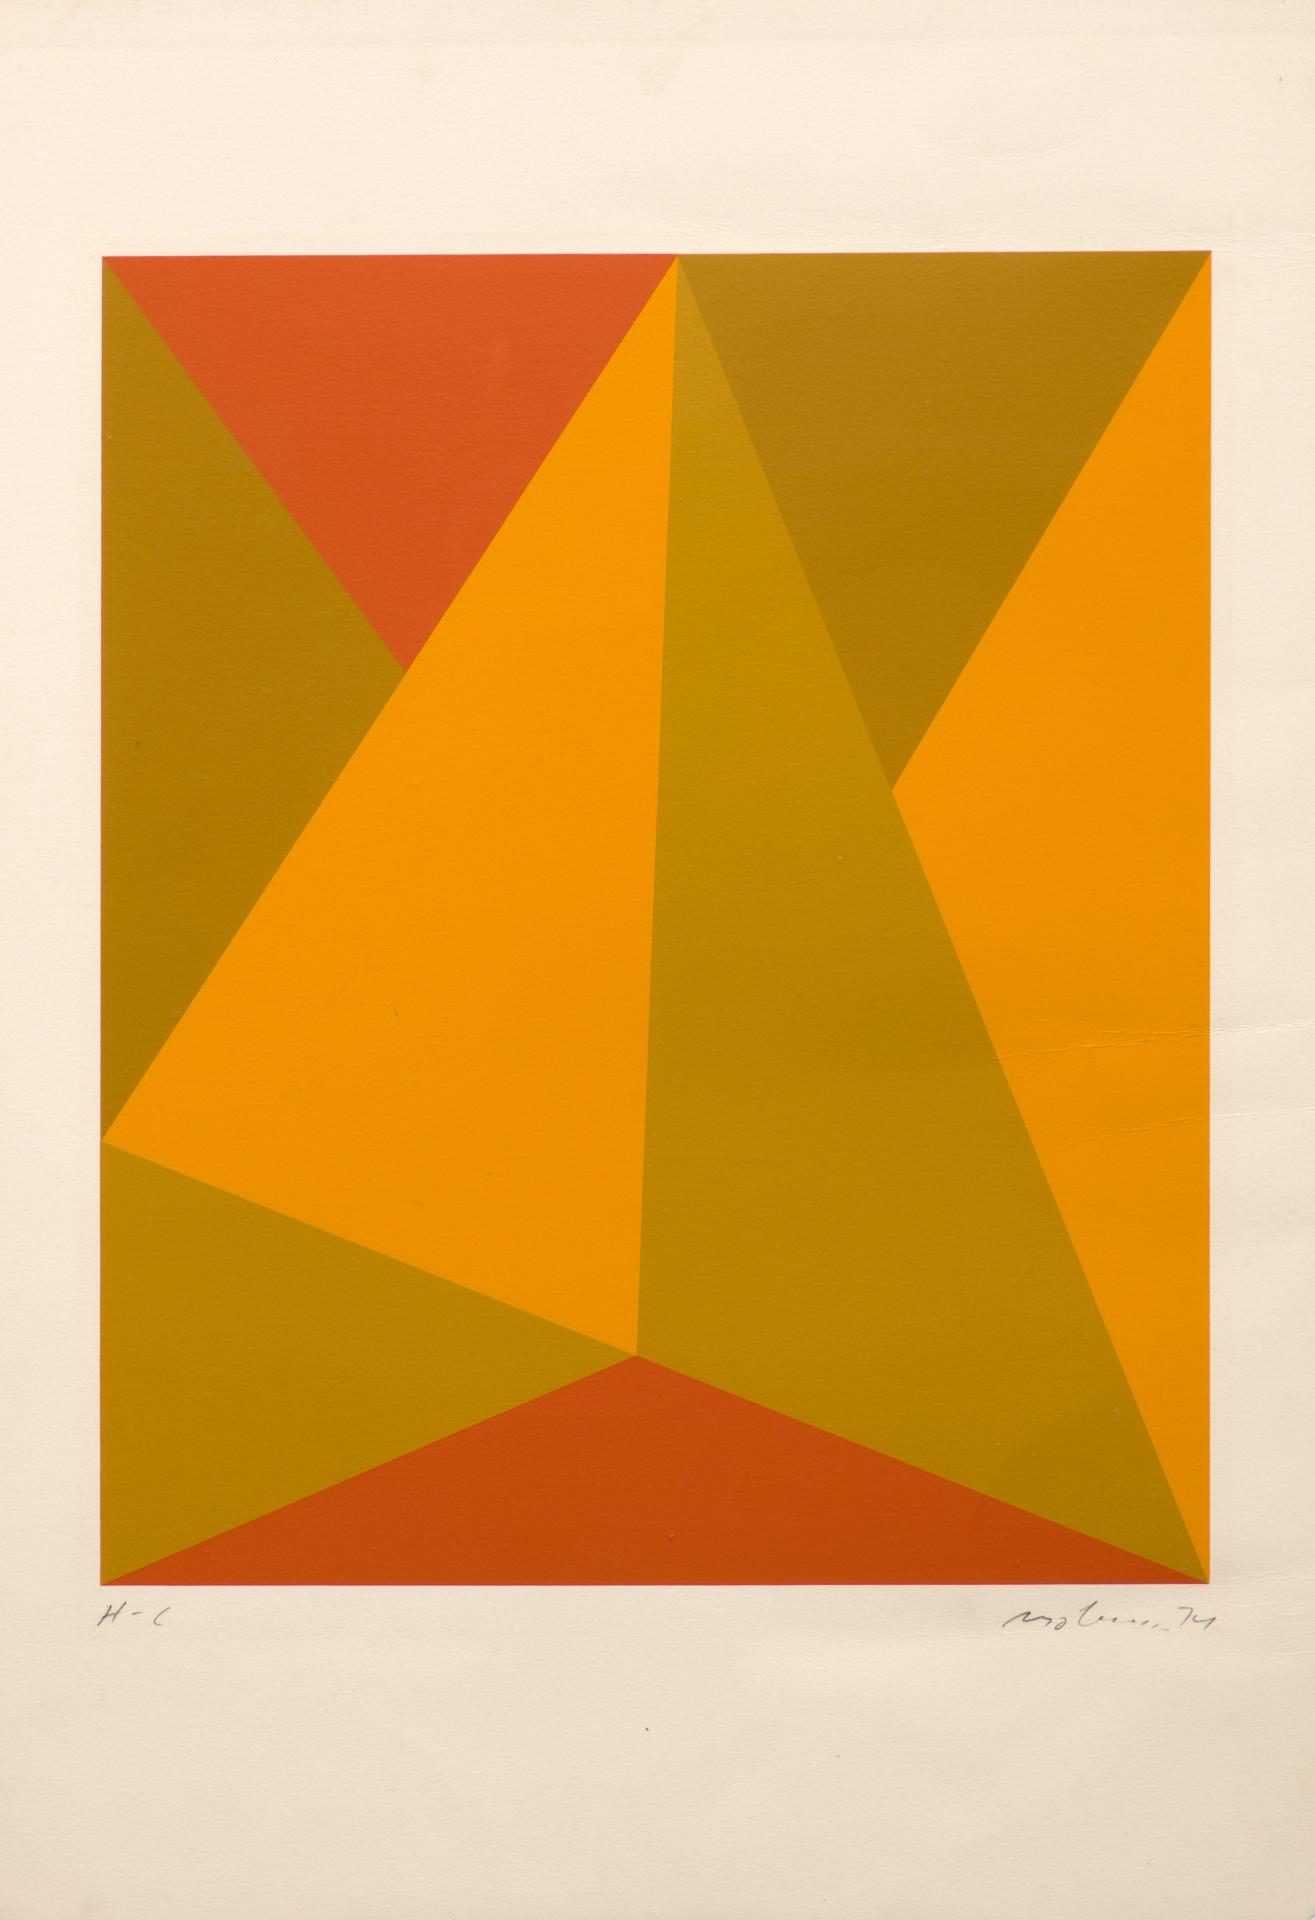 Guido Molinari (1933-2004) - Triangulaire jaune-orange, 1974